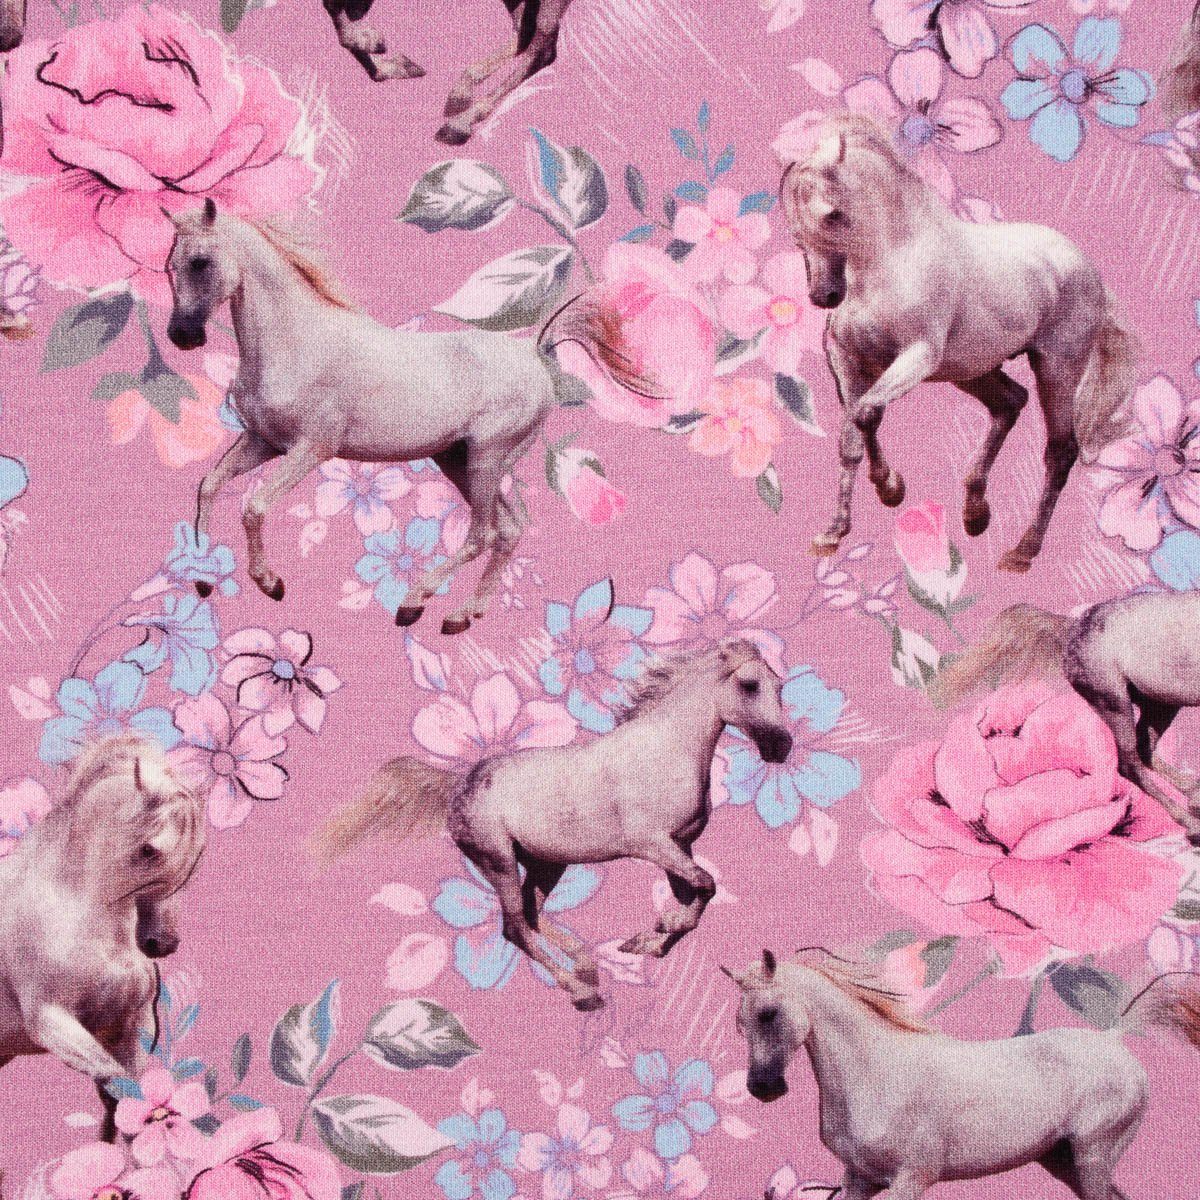 SCHÖNER LEBEN. Stoff Jerseystoff Kinder Baumwolle Digitalprint Pferde  Blumen rosa 1,45m br, allergikergeeignet